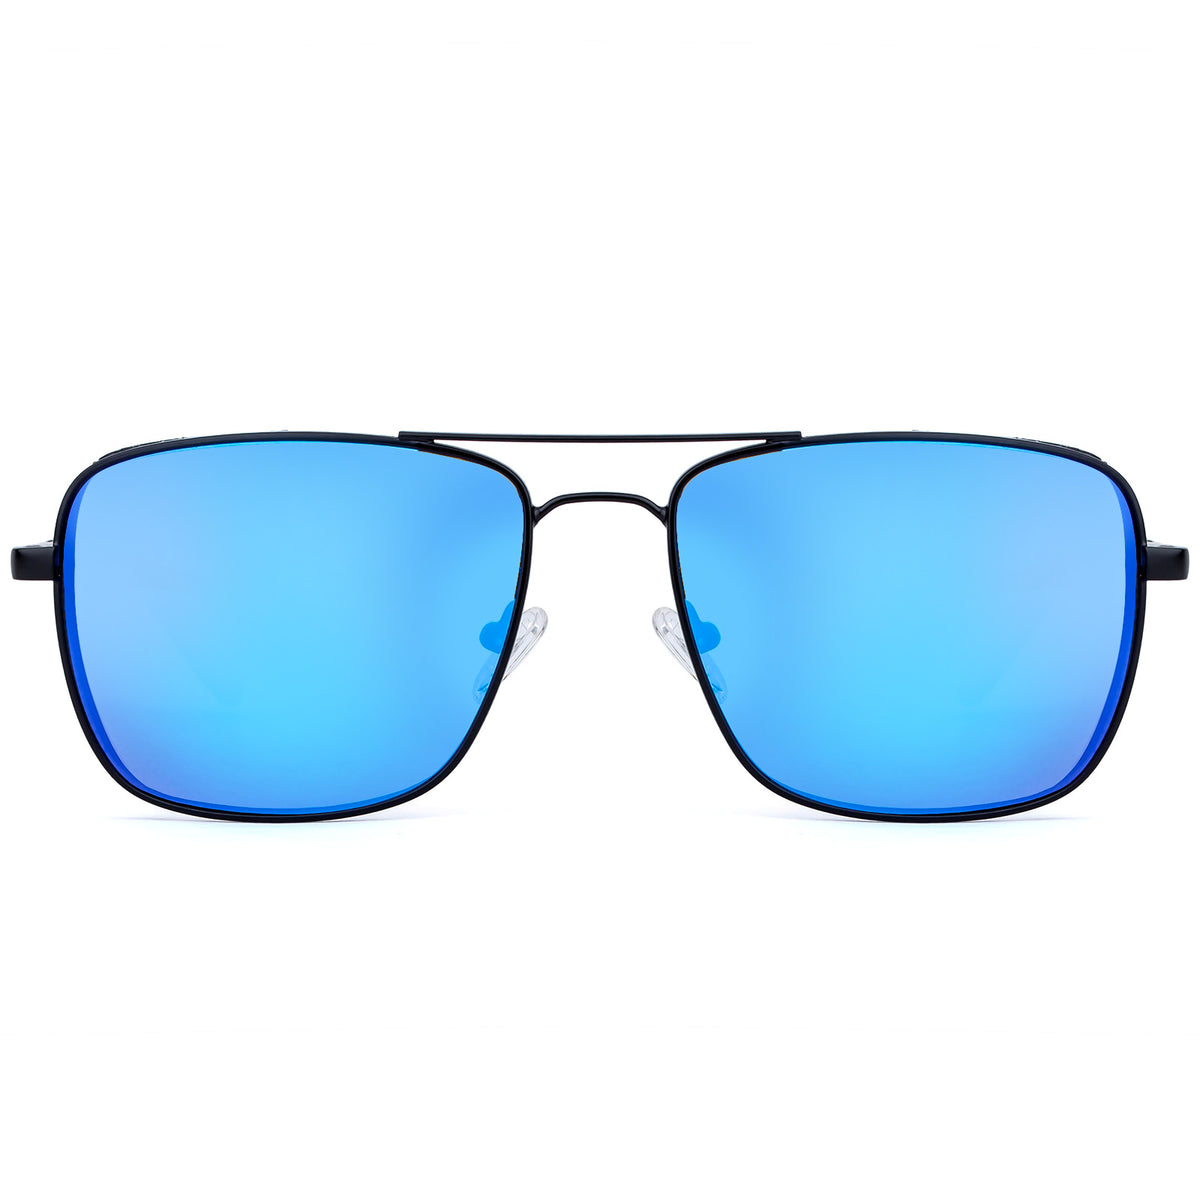 Classic Square Frame Polarized Sunglasses for men – Colossein ...